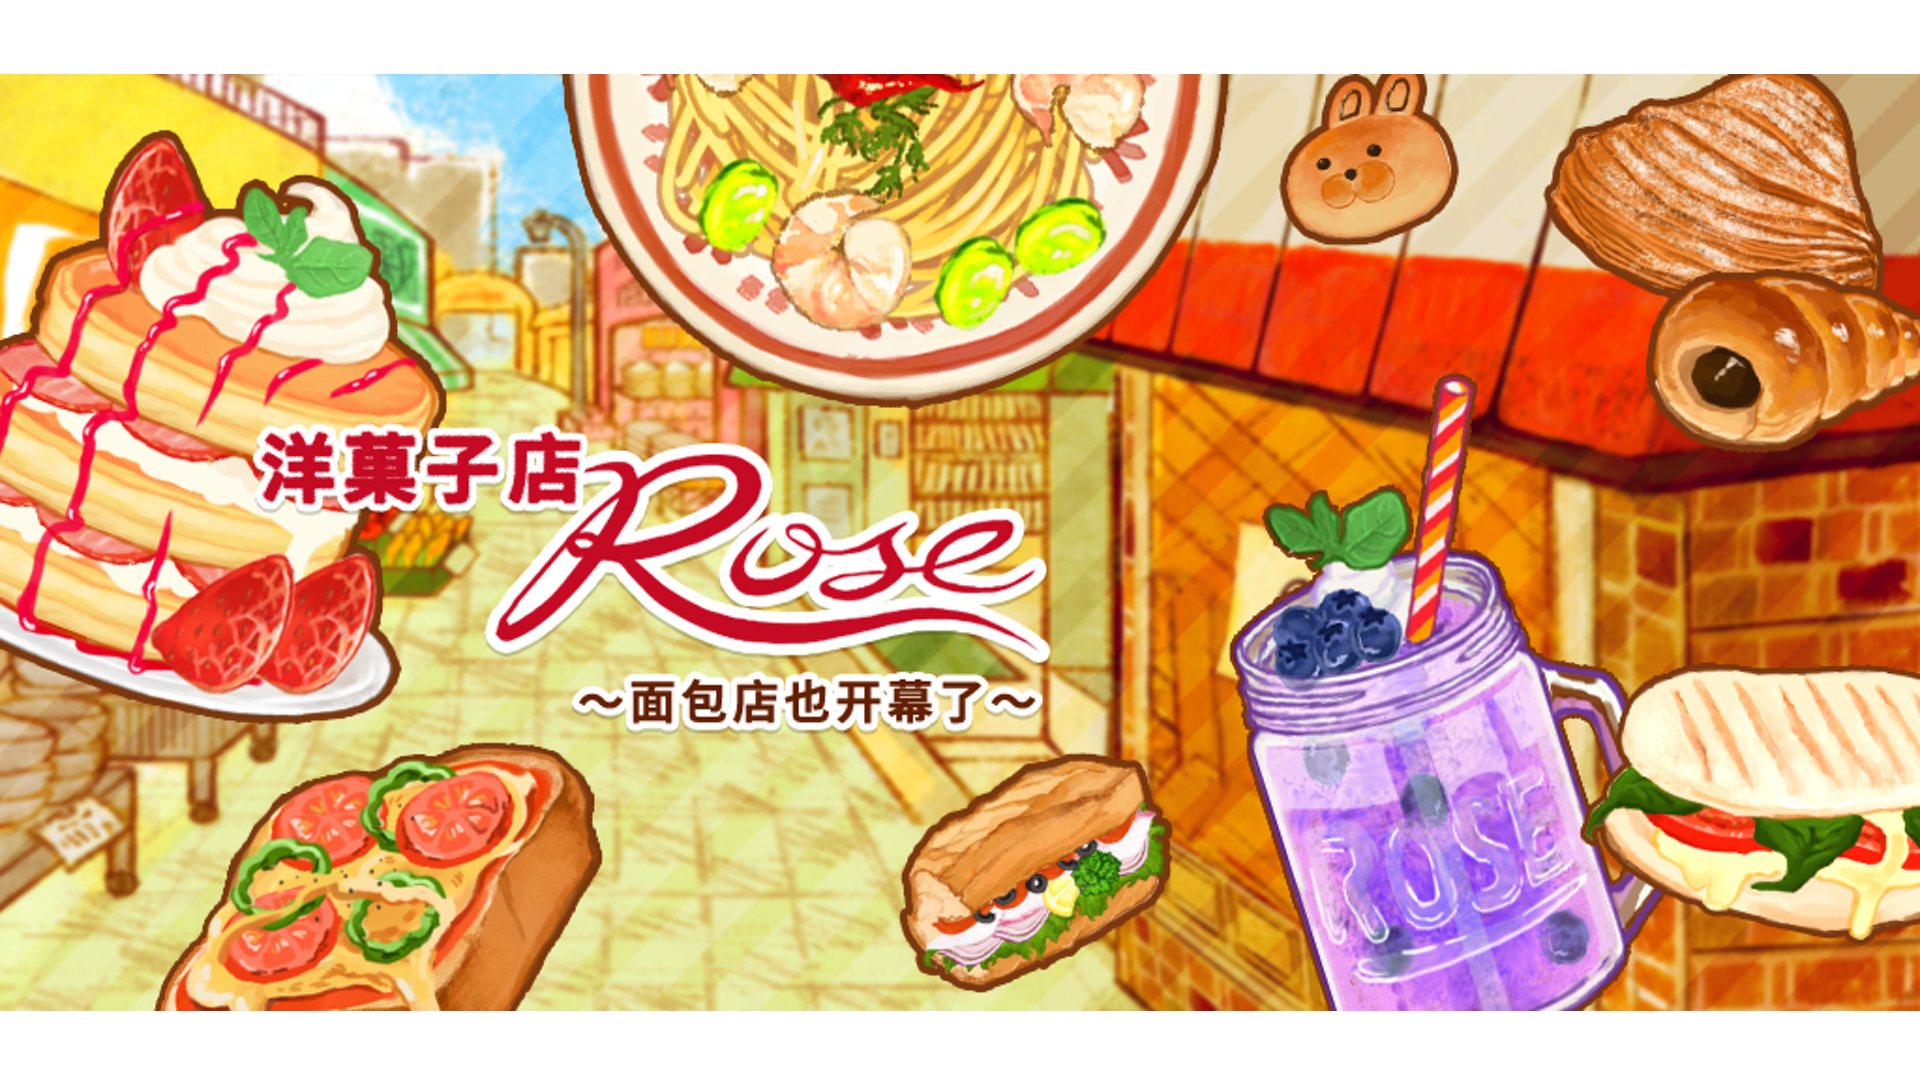 洋果子店rose食譜攻略 No.1453-1460